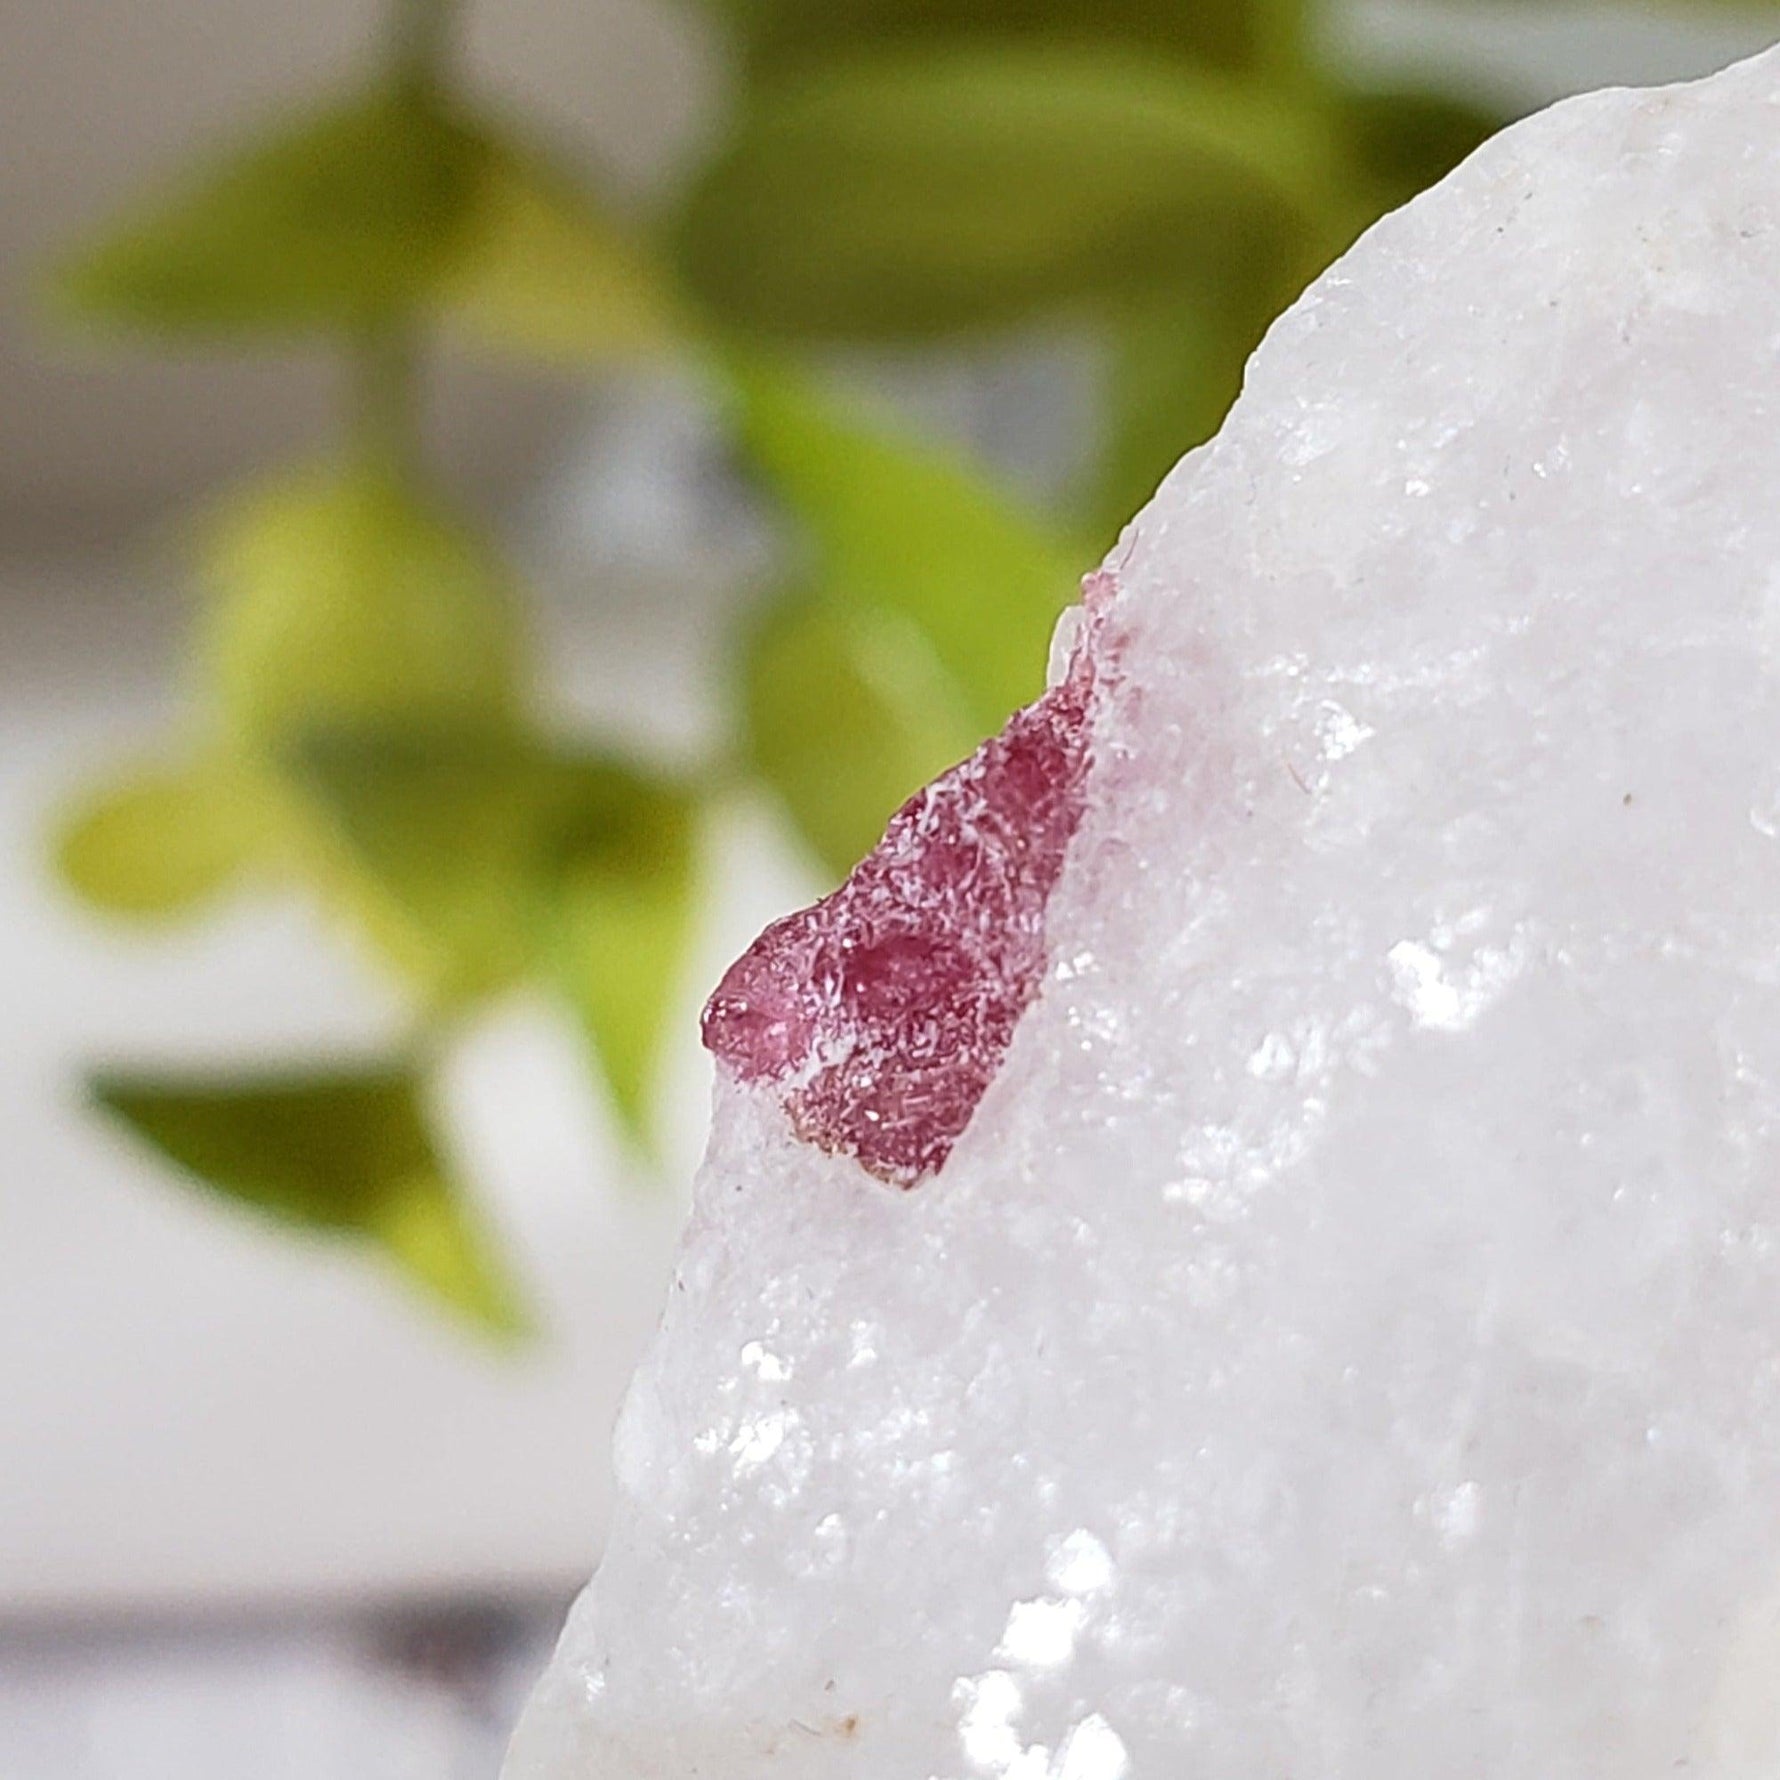 Spinel Crystal in Marble Host | Red Spinel | 35.8 gr, 179 ct | Mogok, Myanmar